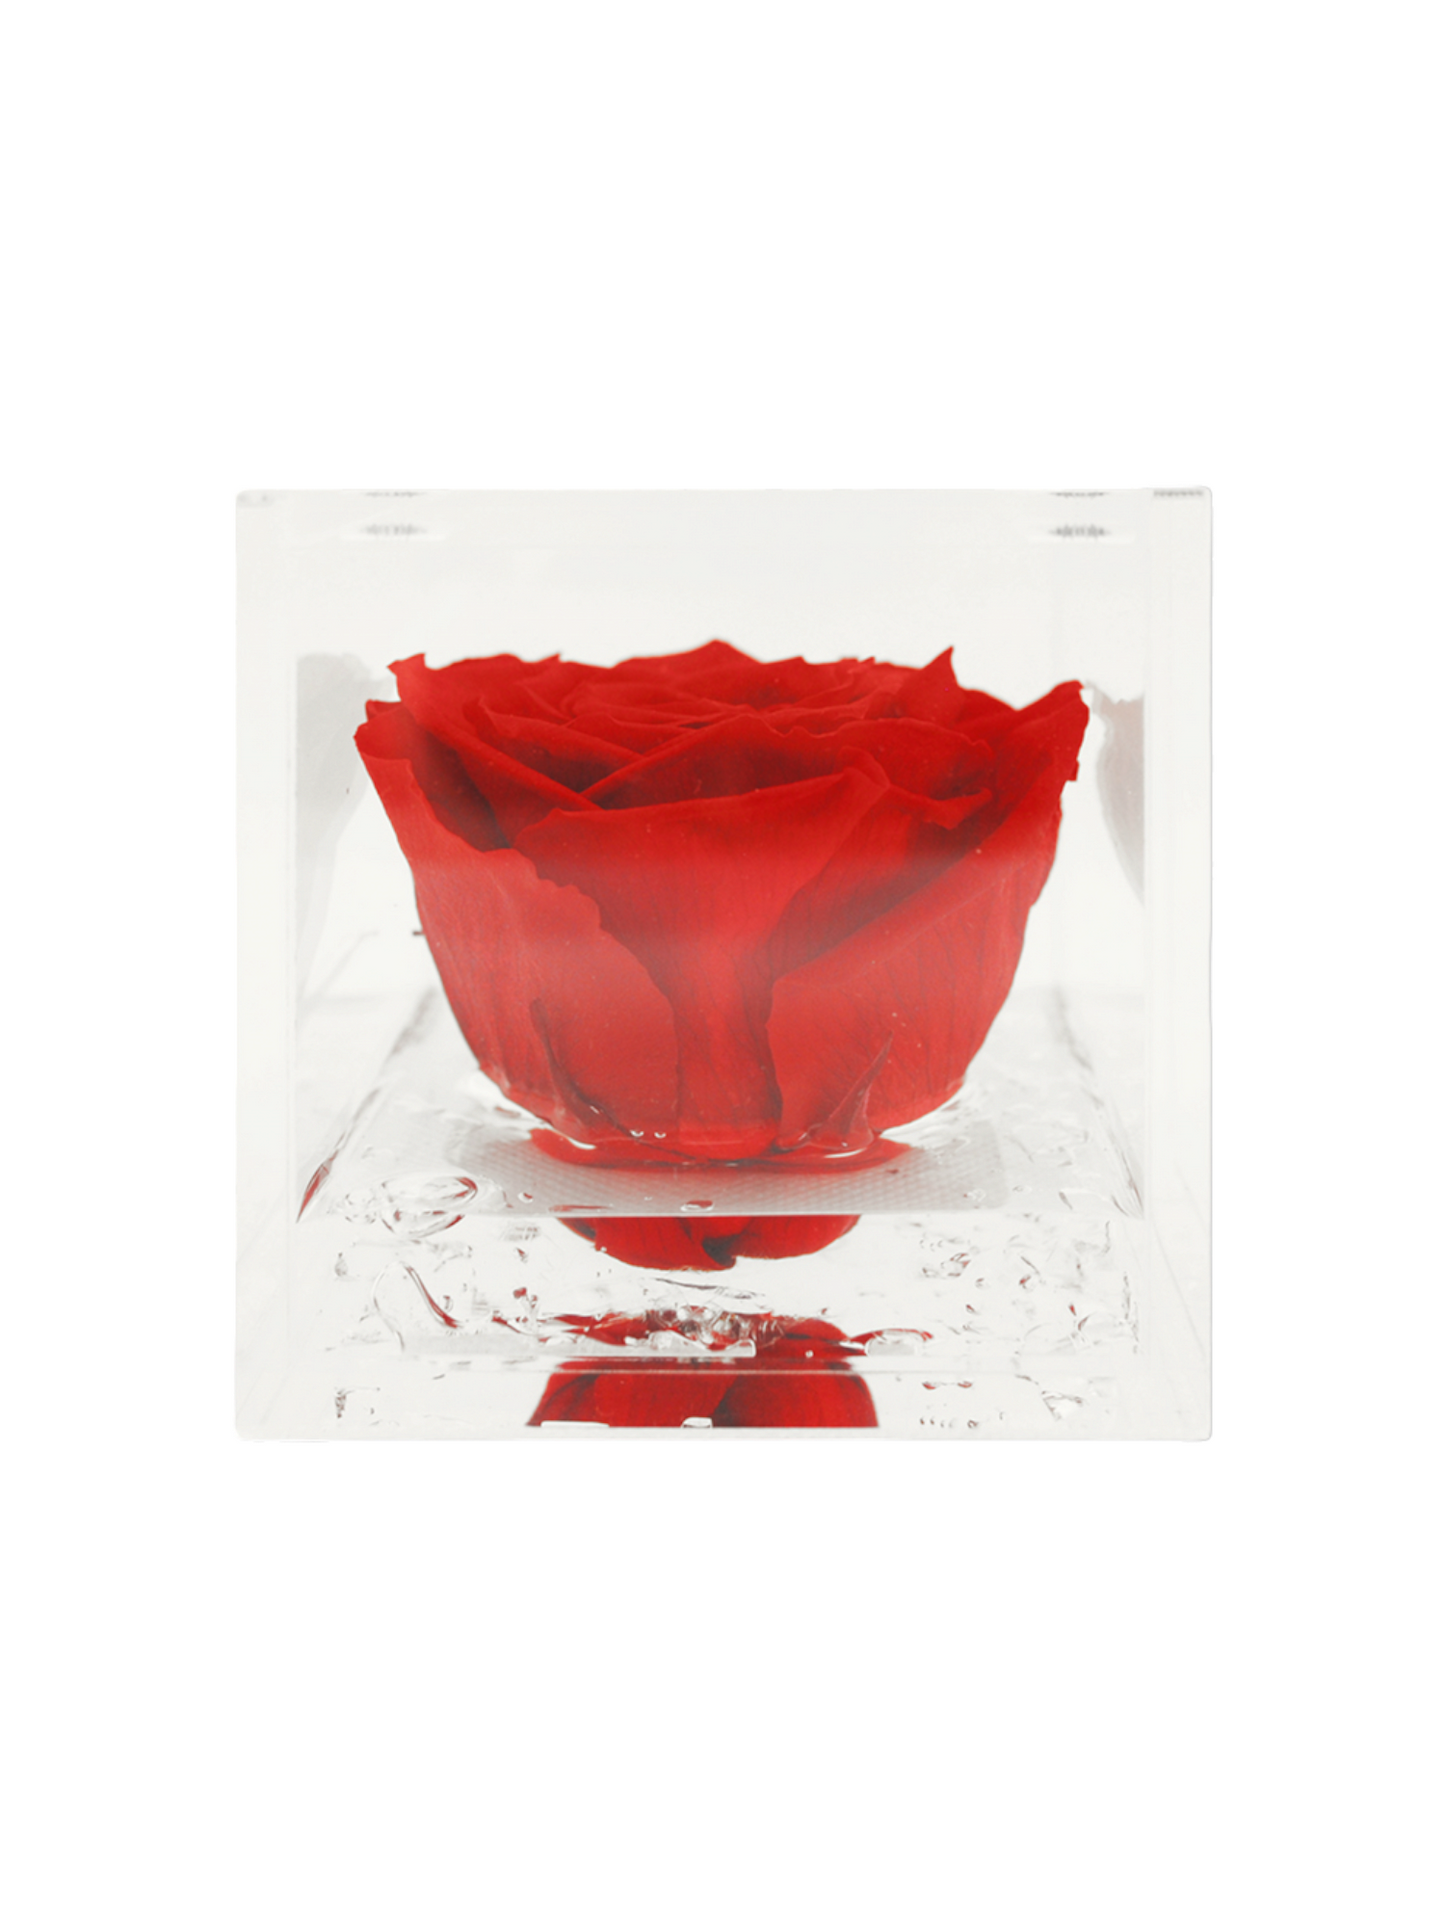 Rose Éternelle Rouge Stabilisée XL - Cube Acrylique L